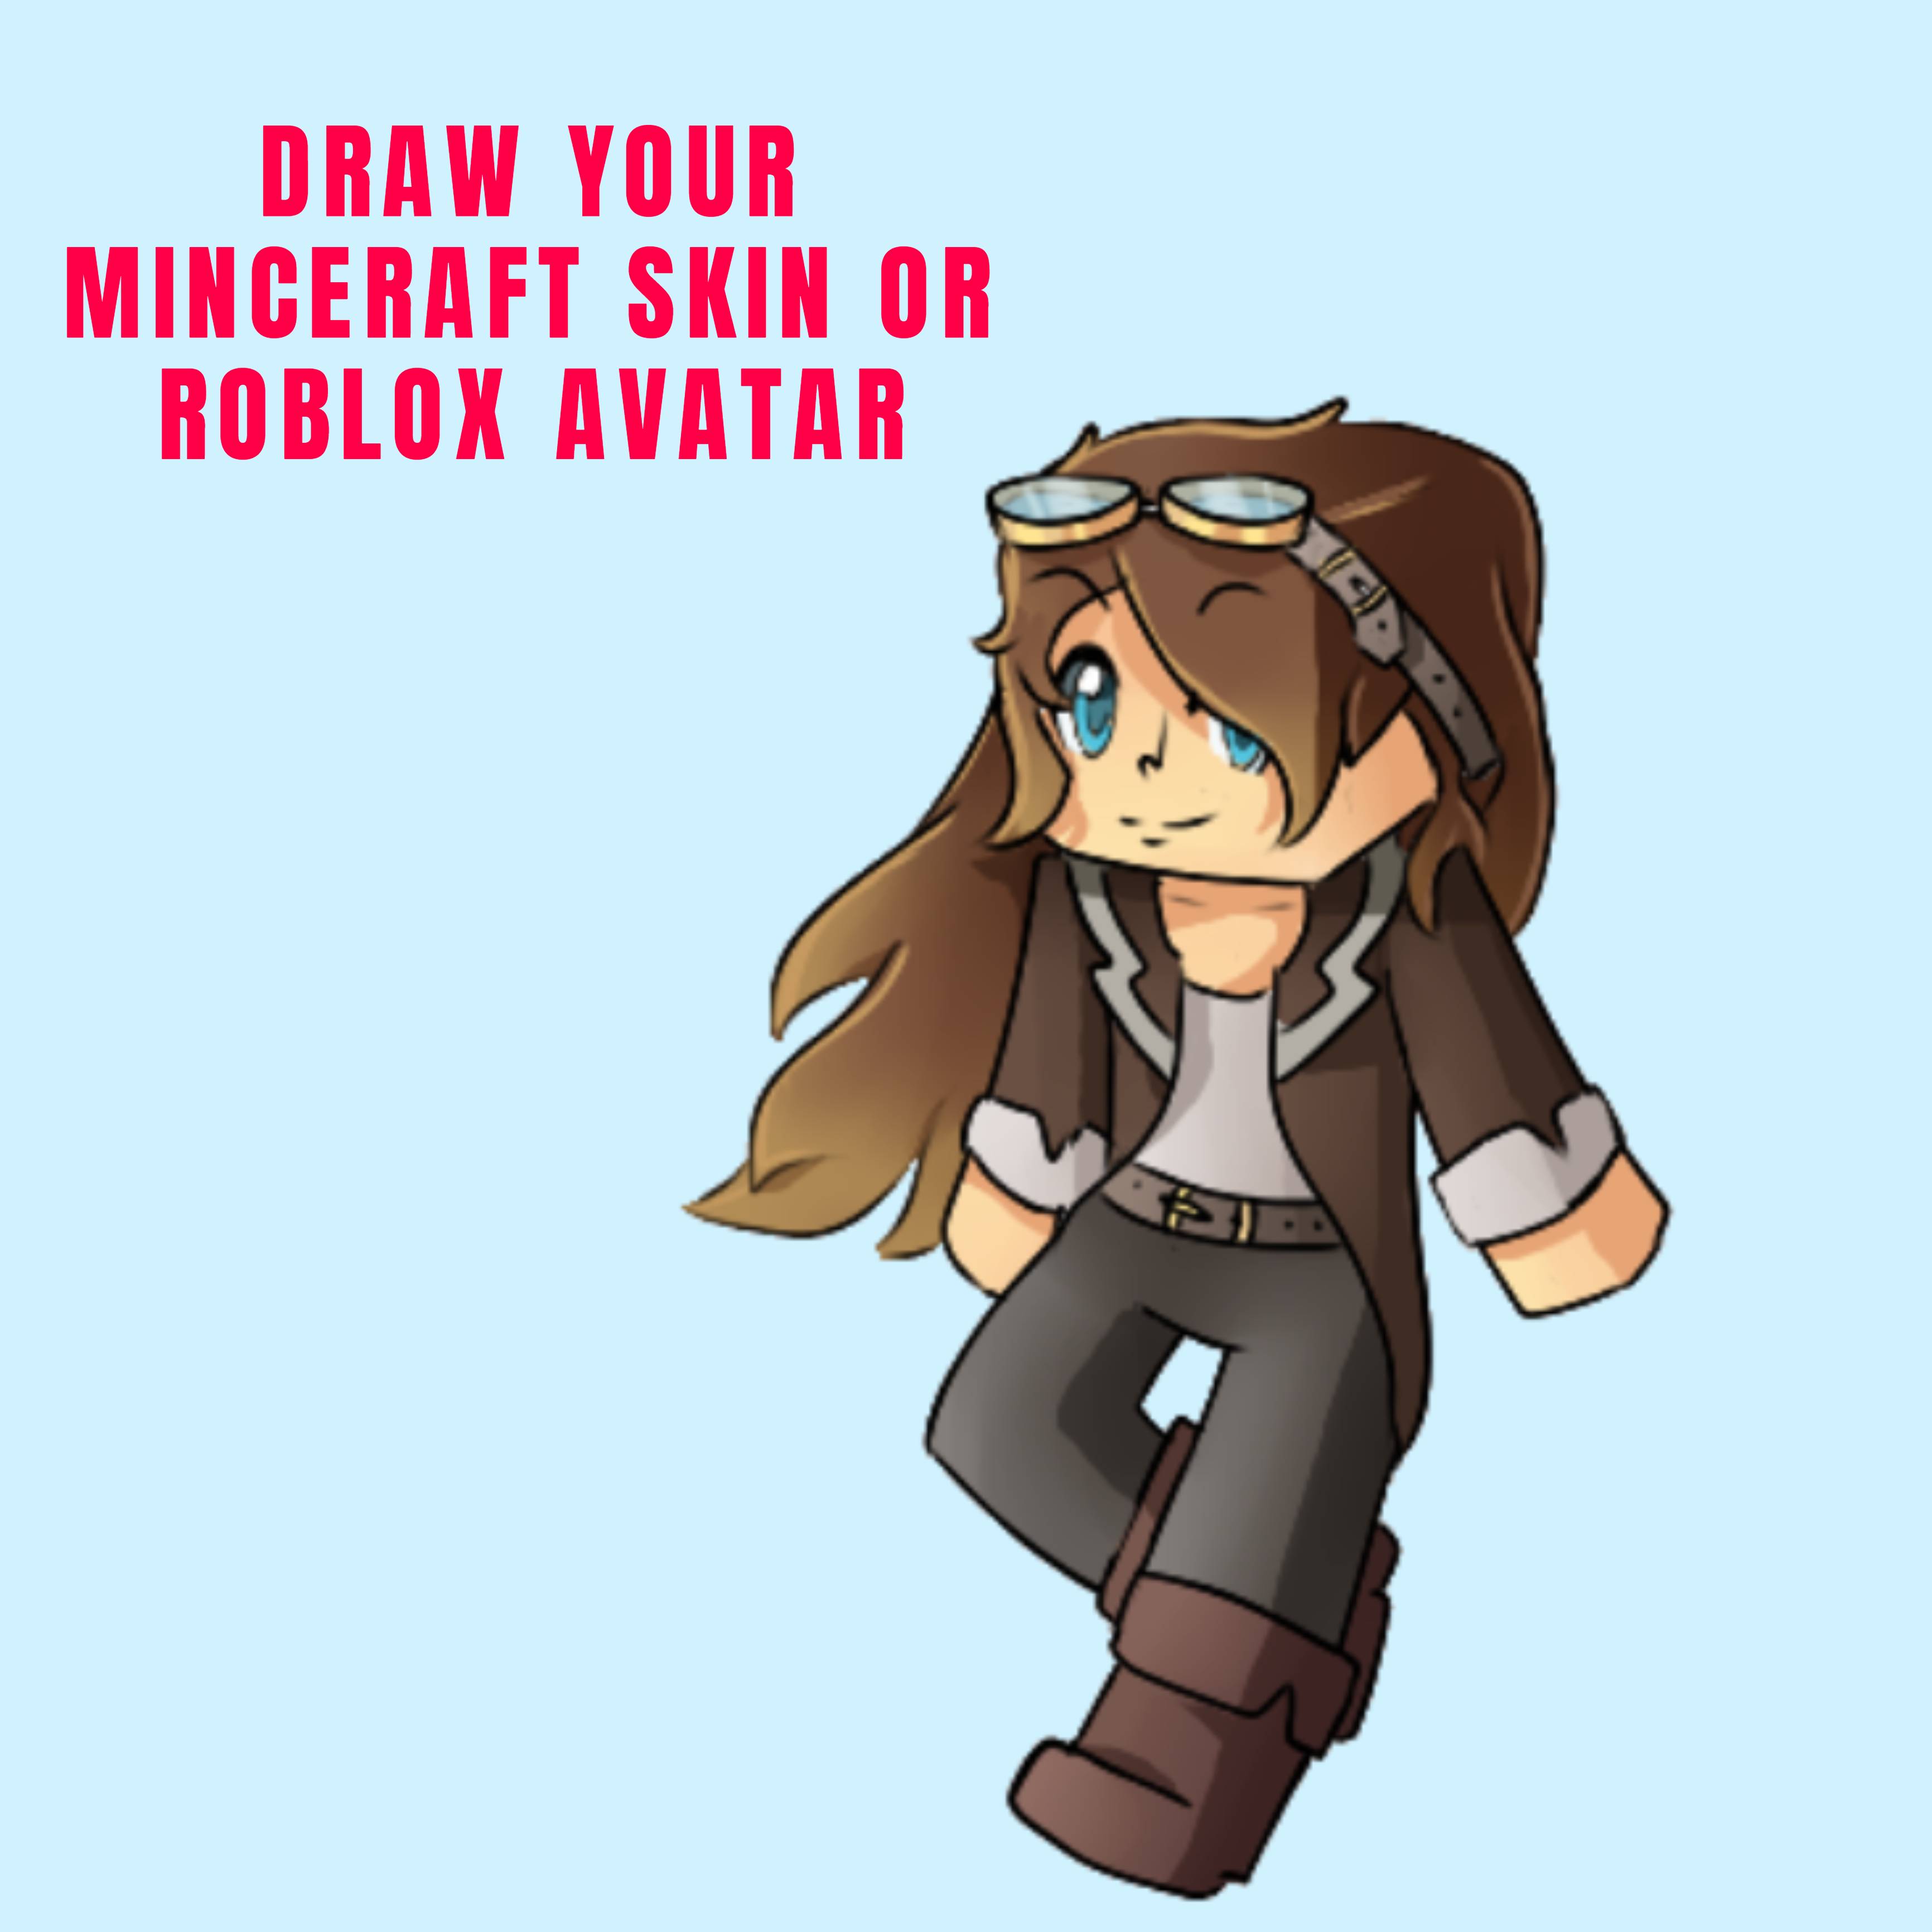 Draw Your Minecraft Skin Or Roblox Avatar By Asmae Daoud - roblox avatar editor hair cutting